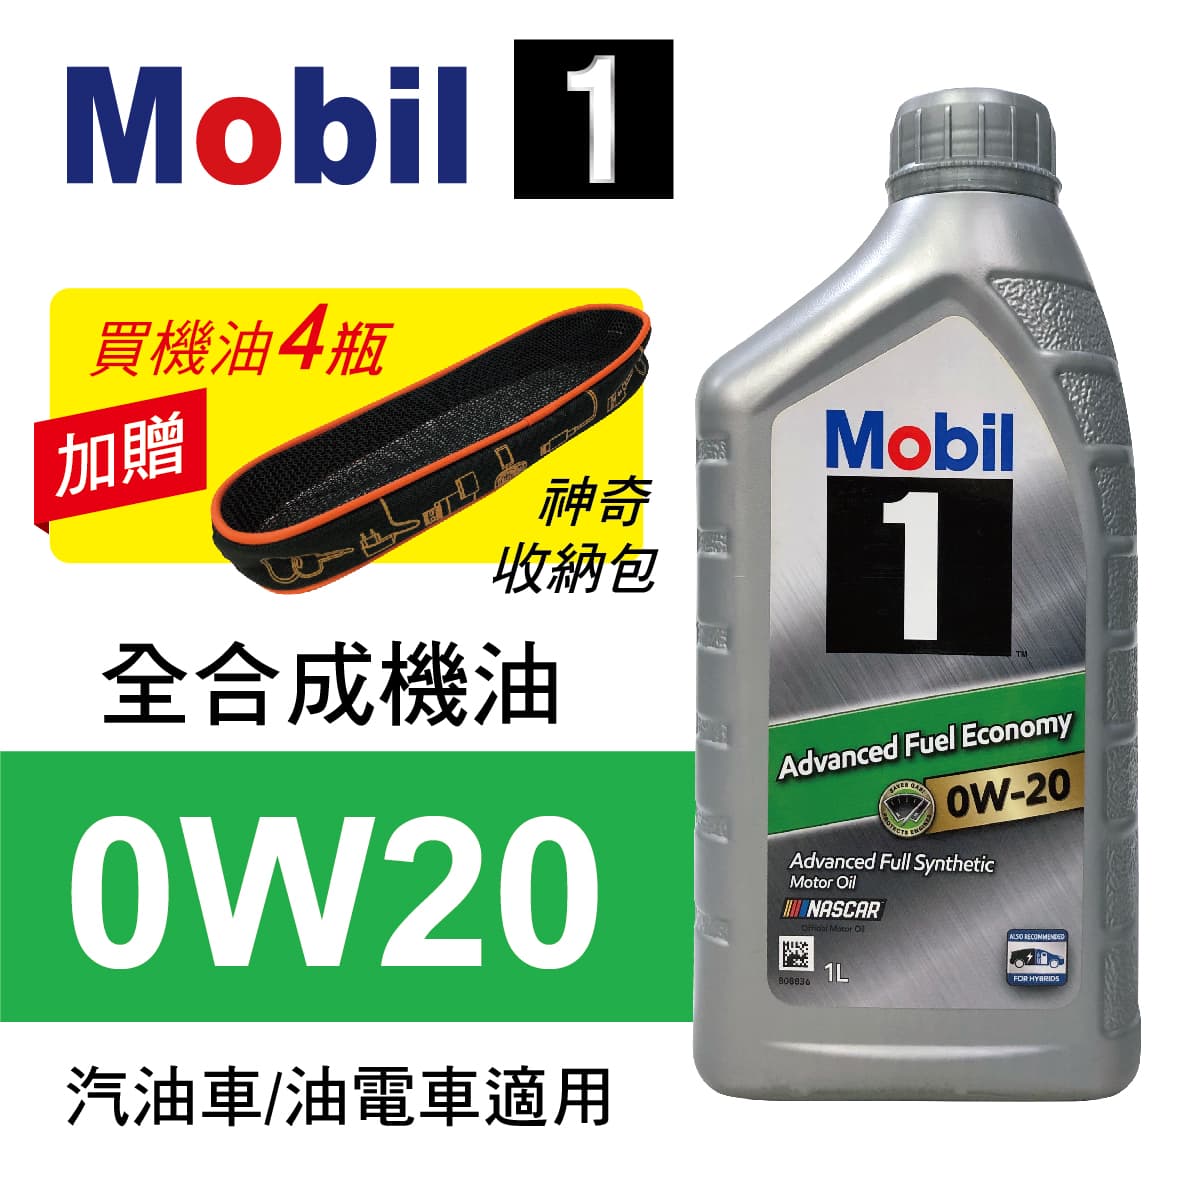 真便宜 Mobil美孚1號 0W20 AFE 全合成機油1L(公司貨/汽油車適用)買4瓶贈好禮